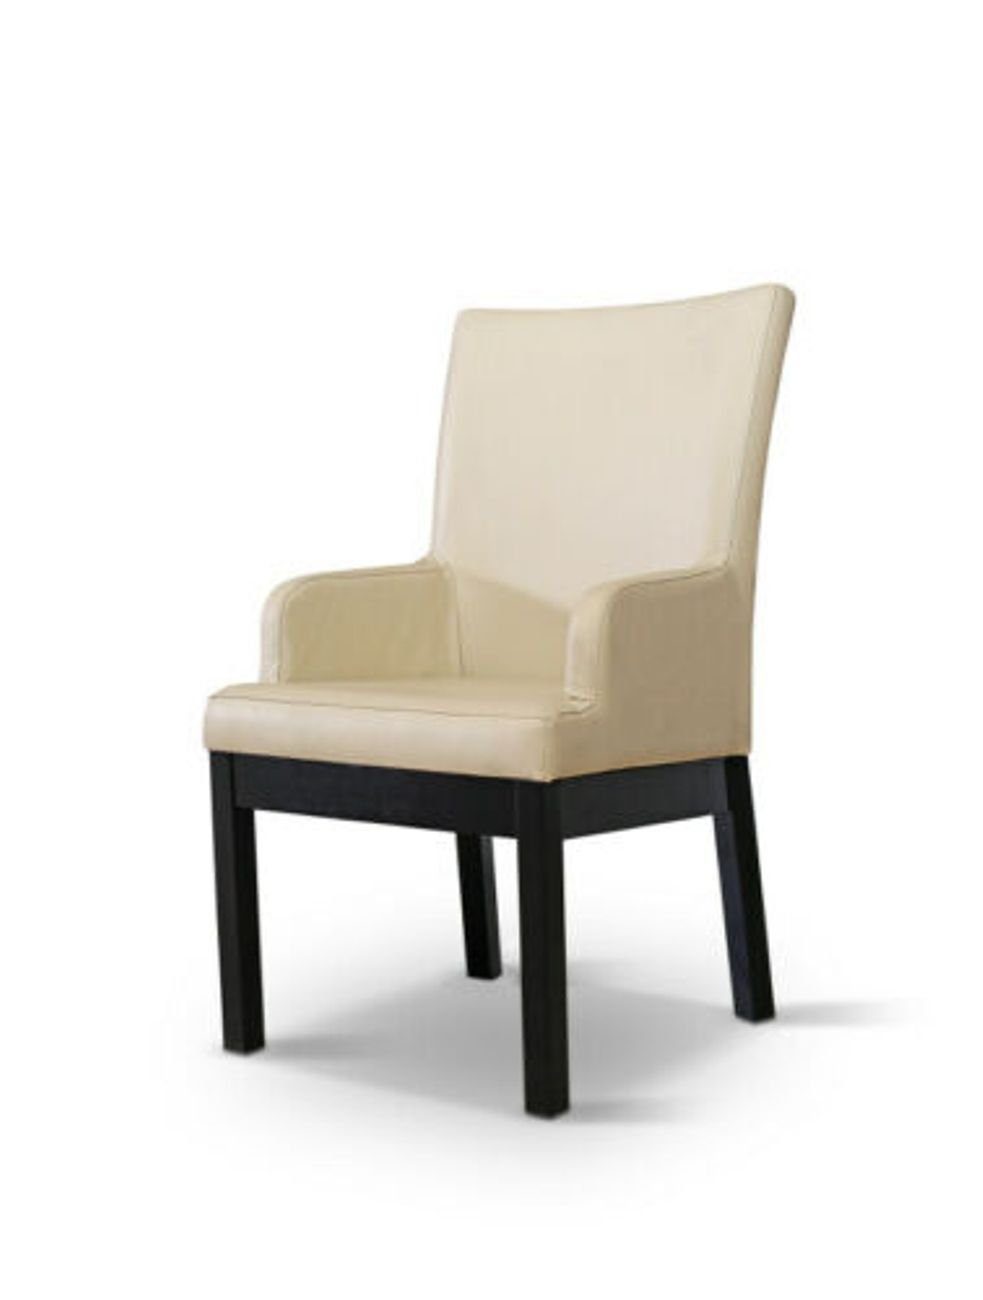 Polster Design Moderner Sessel, Gastro Esszimmer Holz Sessel Stuhl JVmoebel Stühle